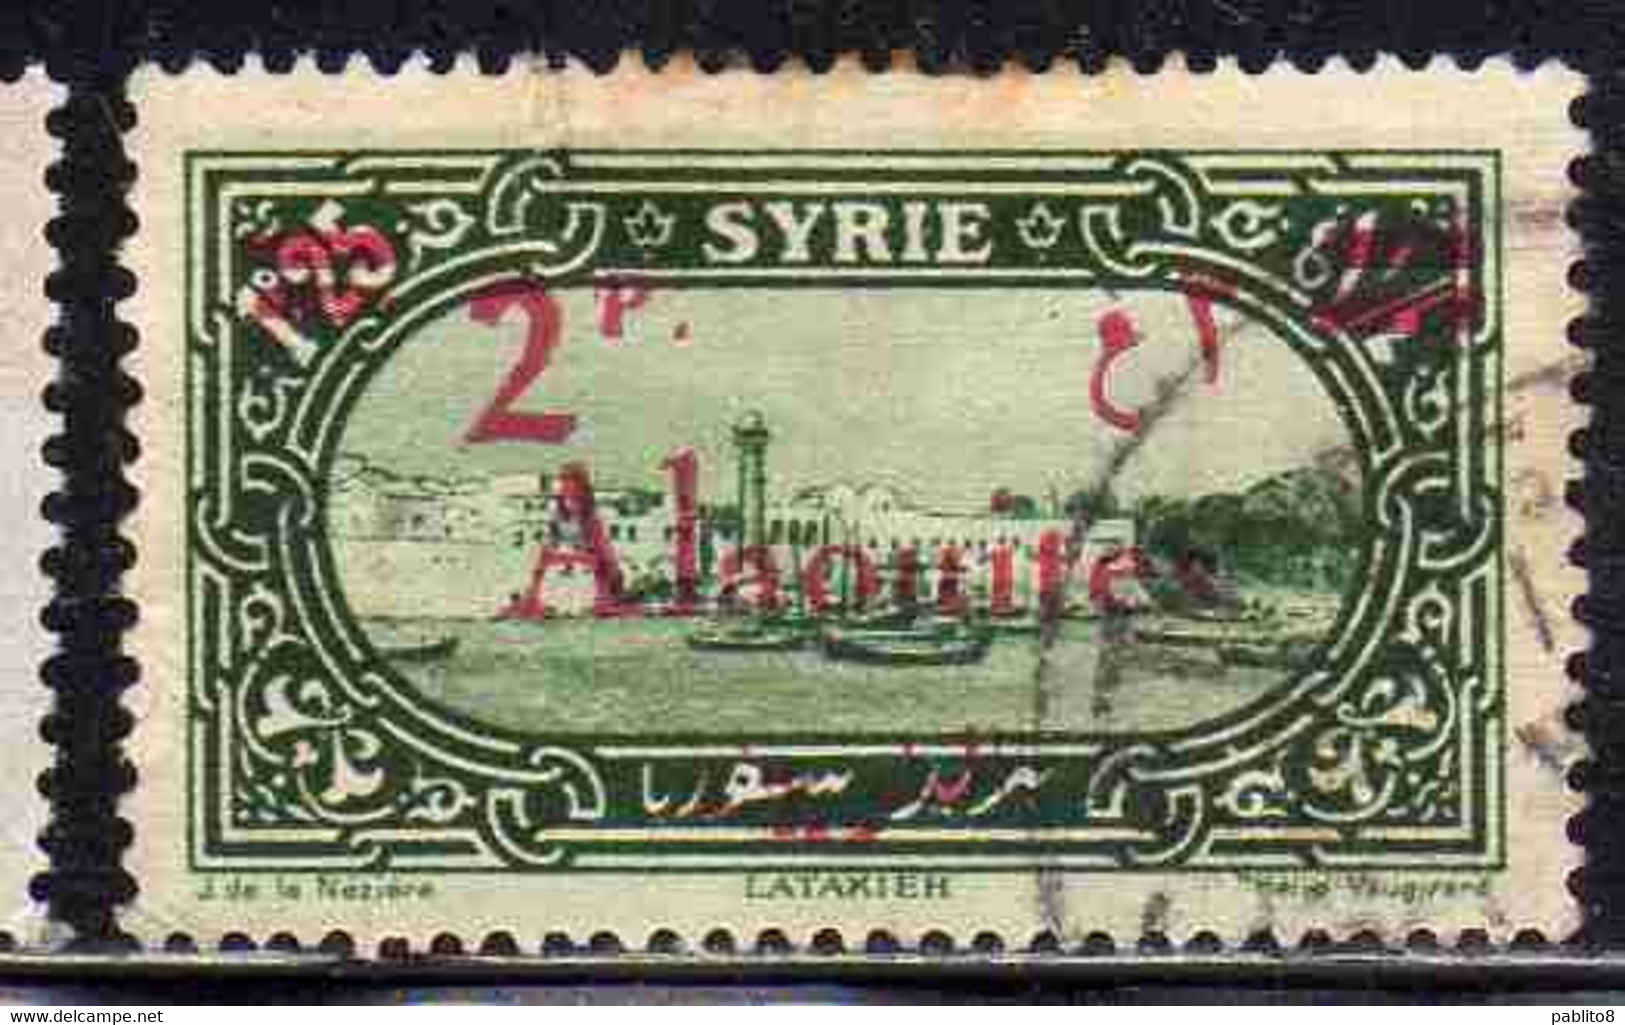 ALAOUITES SYRIA SIRIA ALAQUITES 1928 LATAKIA HARBOR SURCHARGED 2p On 1.25p USED USATO OBLITERE' - Usados